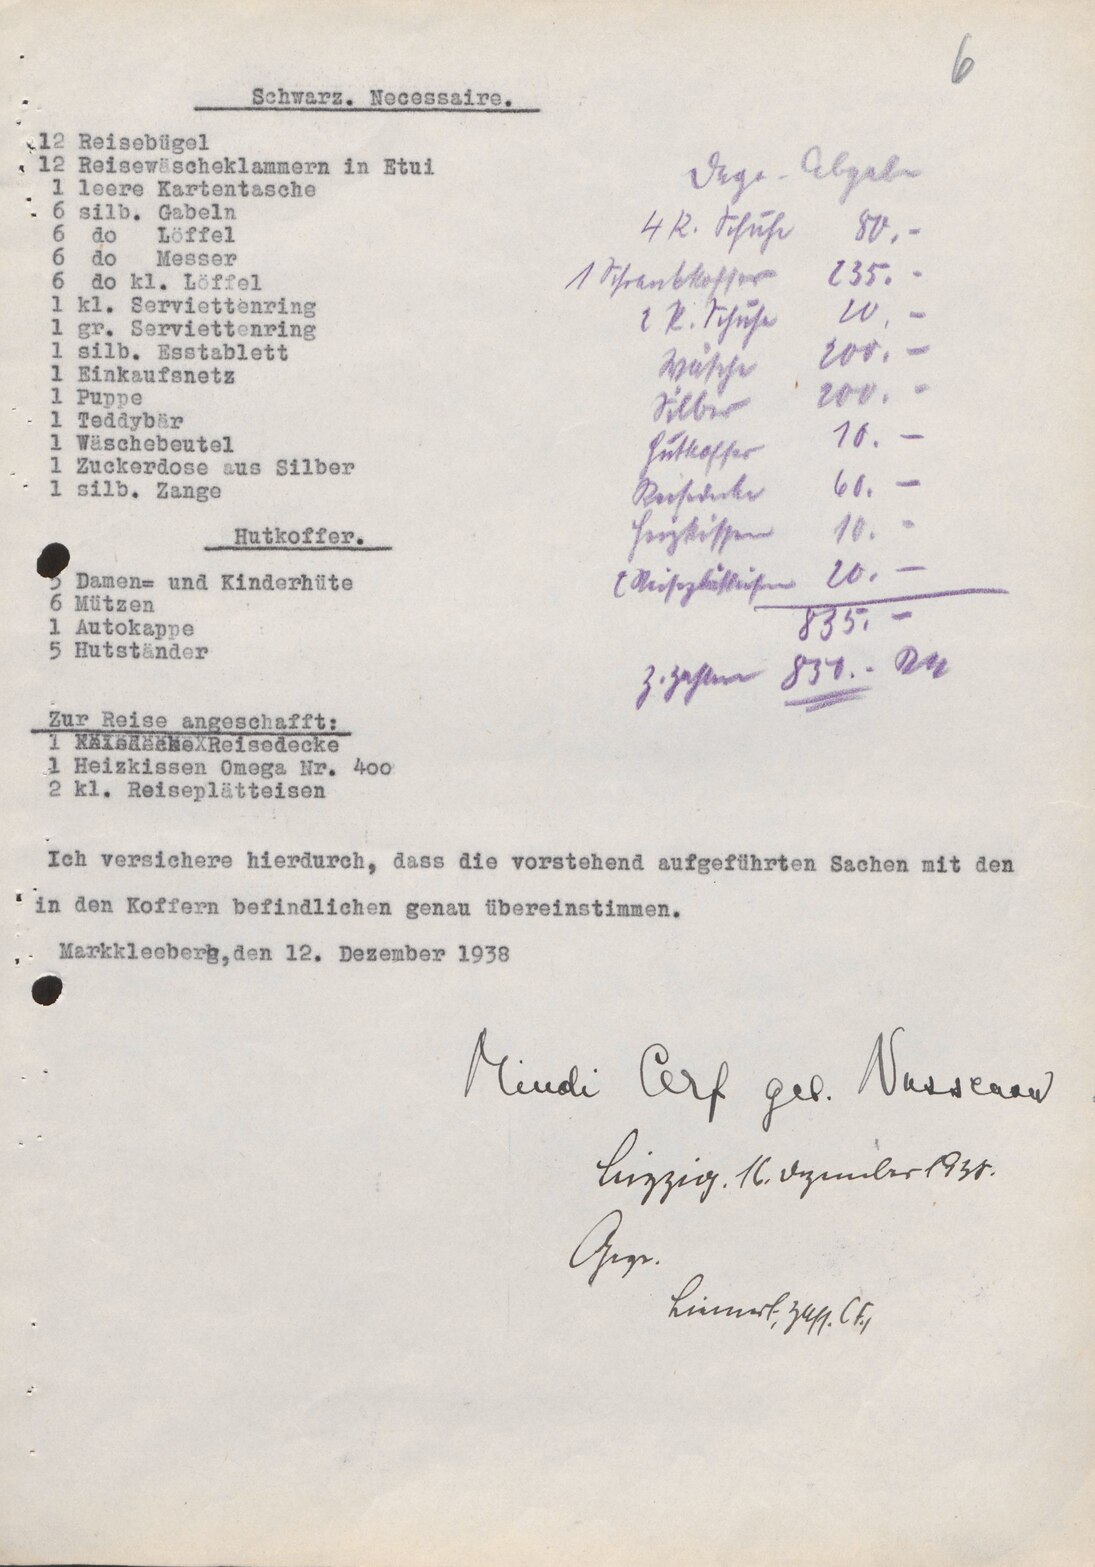 Umzugsgutverzeichnis von Mindi Cerf (S. 1 und 6) mit Berechnung der »Dego-Abgabe«, 16. Dezember 1938 (SächsStA-L, 20206 Oberfinanzpräsident Leipzig, Nr. 165)